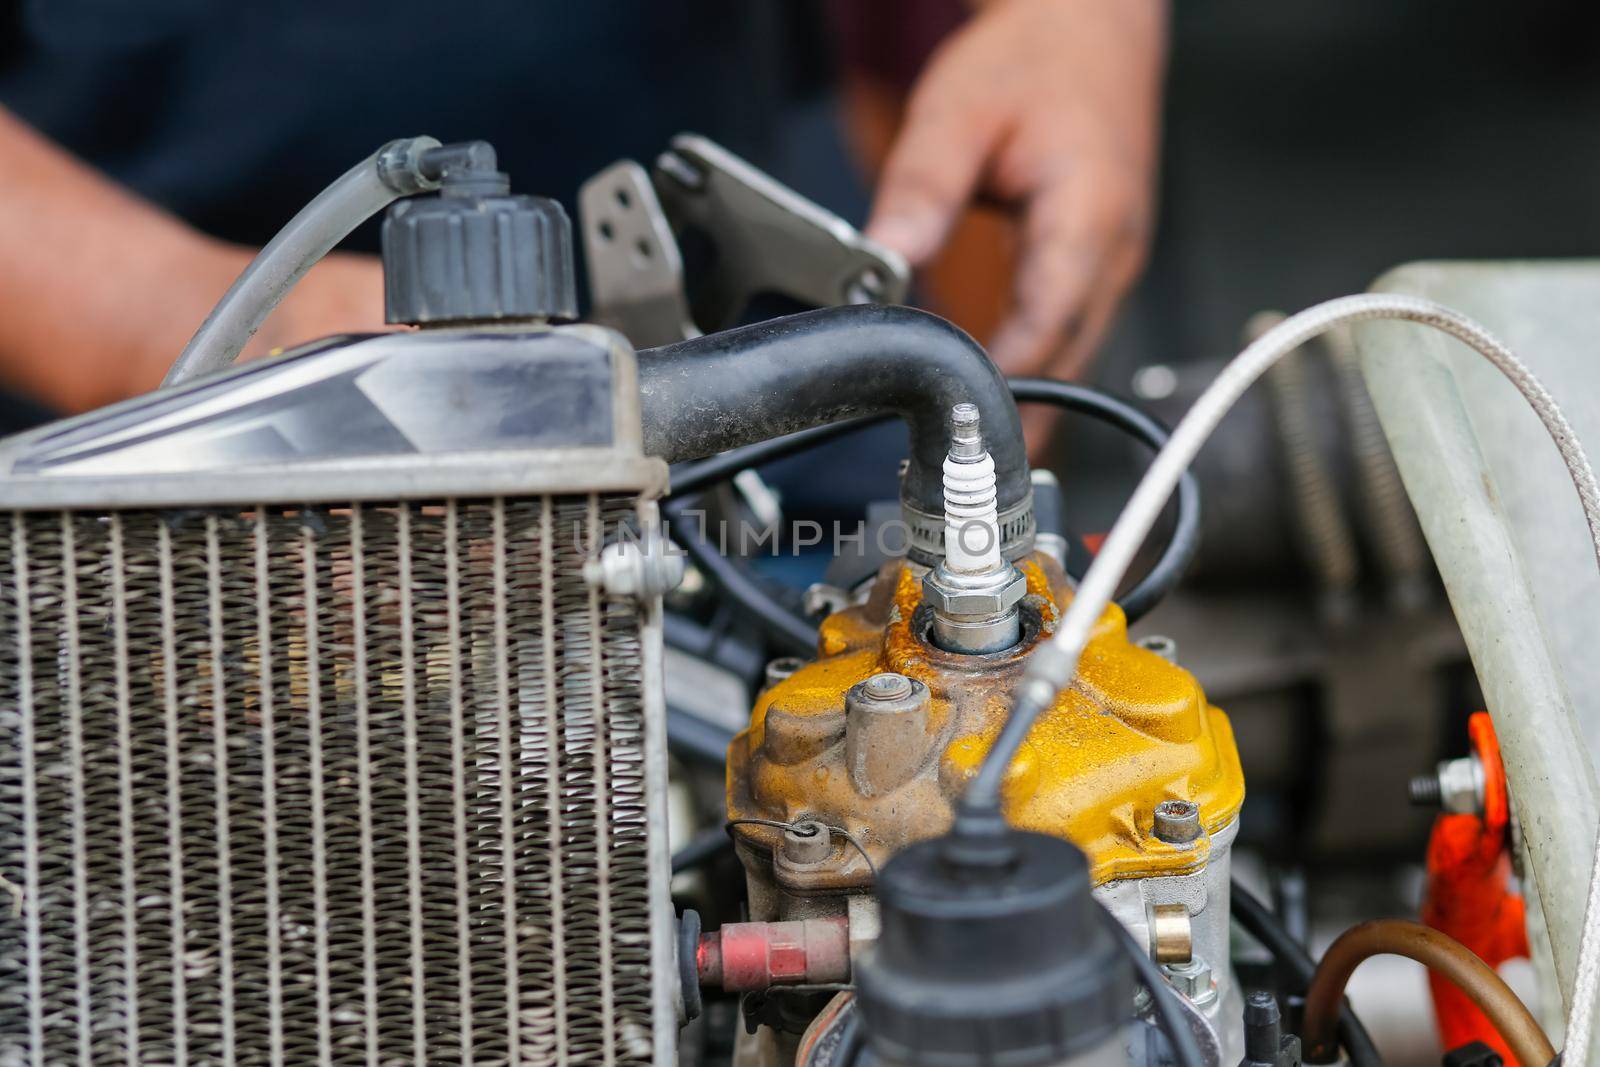 Two stroke kart engine repairing in garage